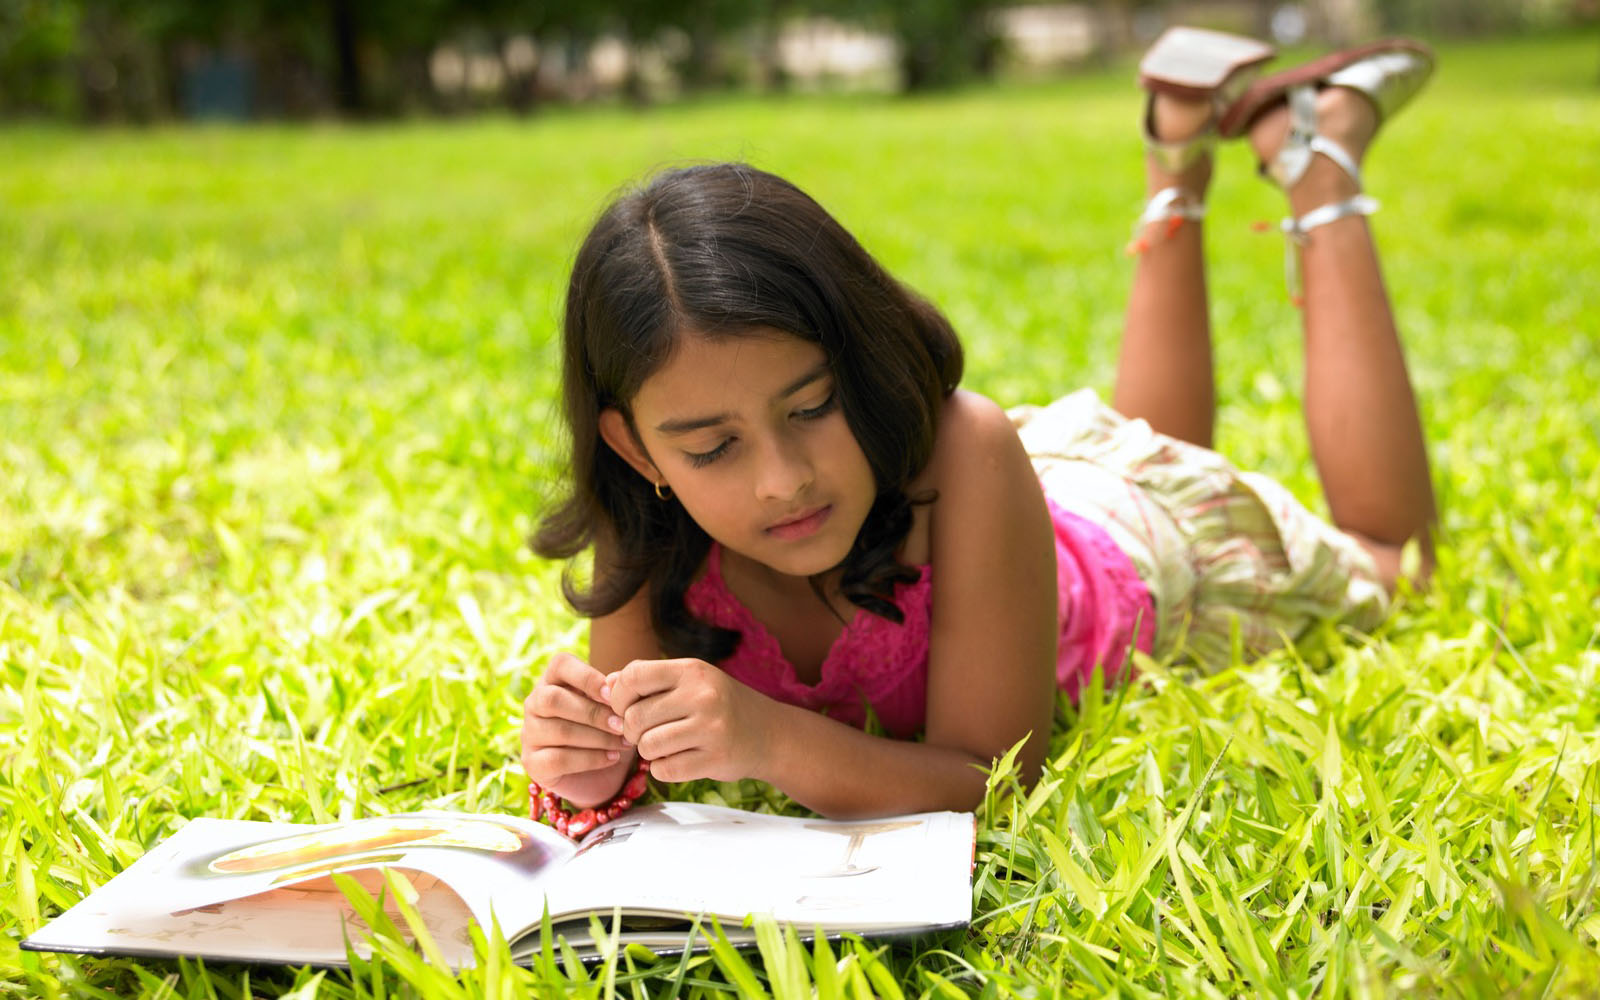 بچوں کو کتابیں منتخب کرنے دیں ، مطالعہ کی صلاحیت میں اضافہ ہوگا